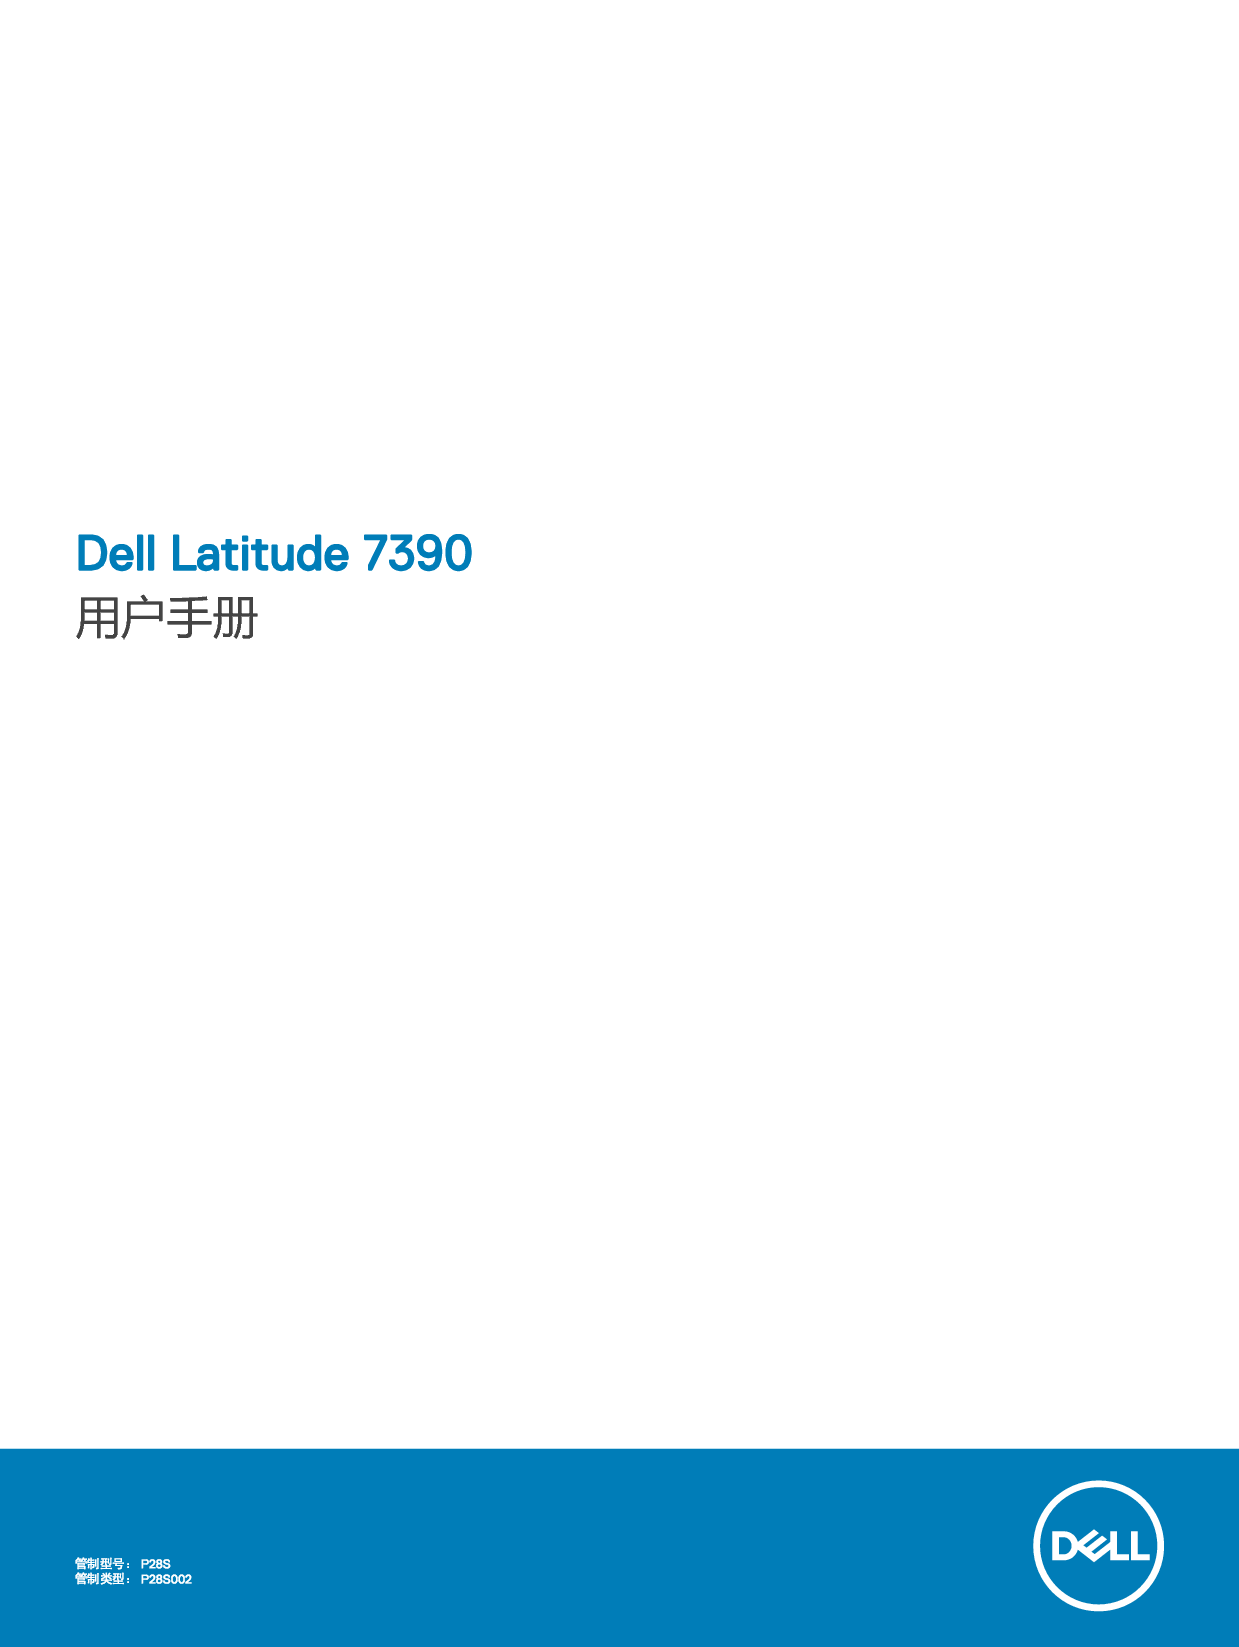 戴尔 Dell Latitude 7390 用户手册 封面